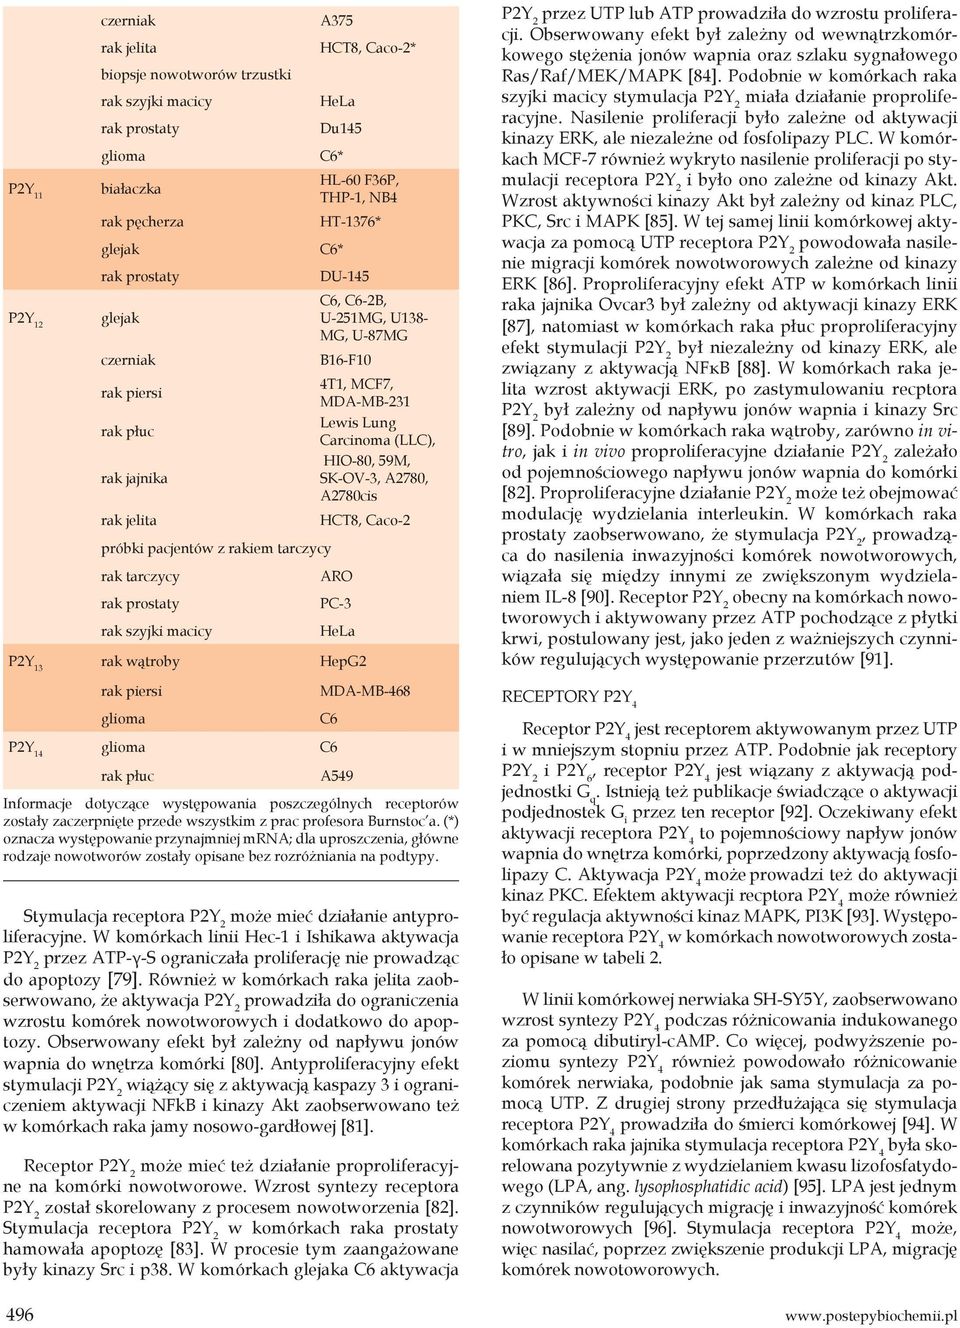 Caco-2 ARO PC-3 HeLa P2Y 13 rak wątroby HepG2 glioma MDA-MB-468 Stymulacja receptora może mieć działanie antyproliferacyjne.